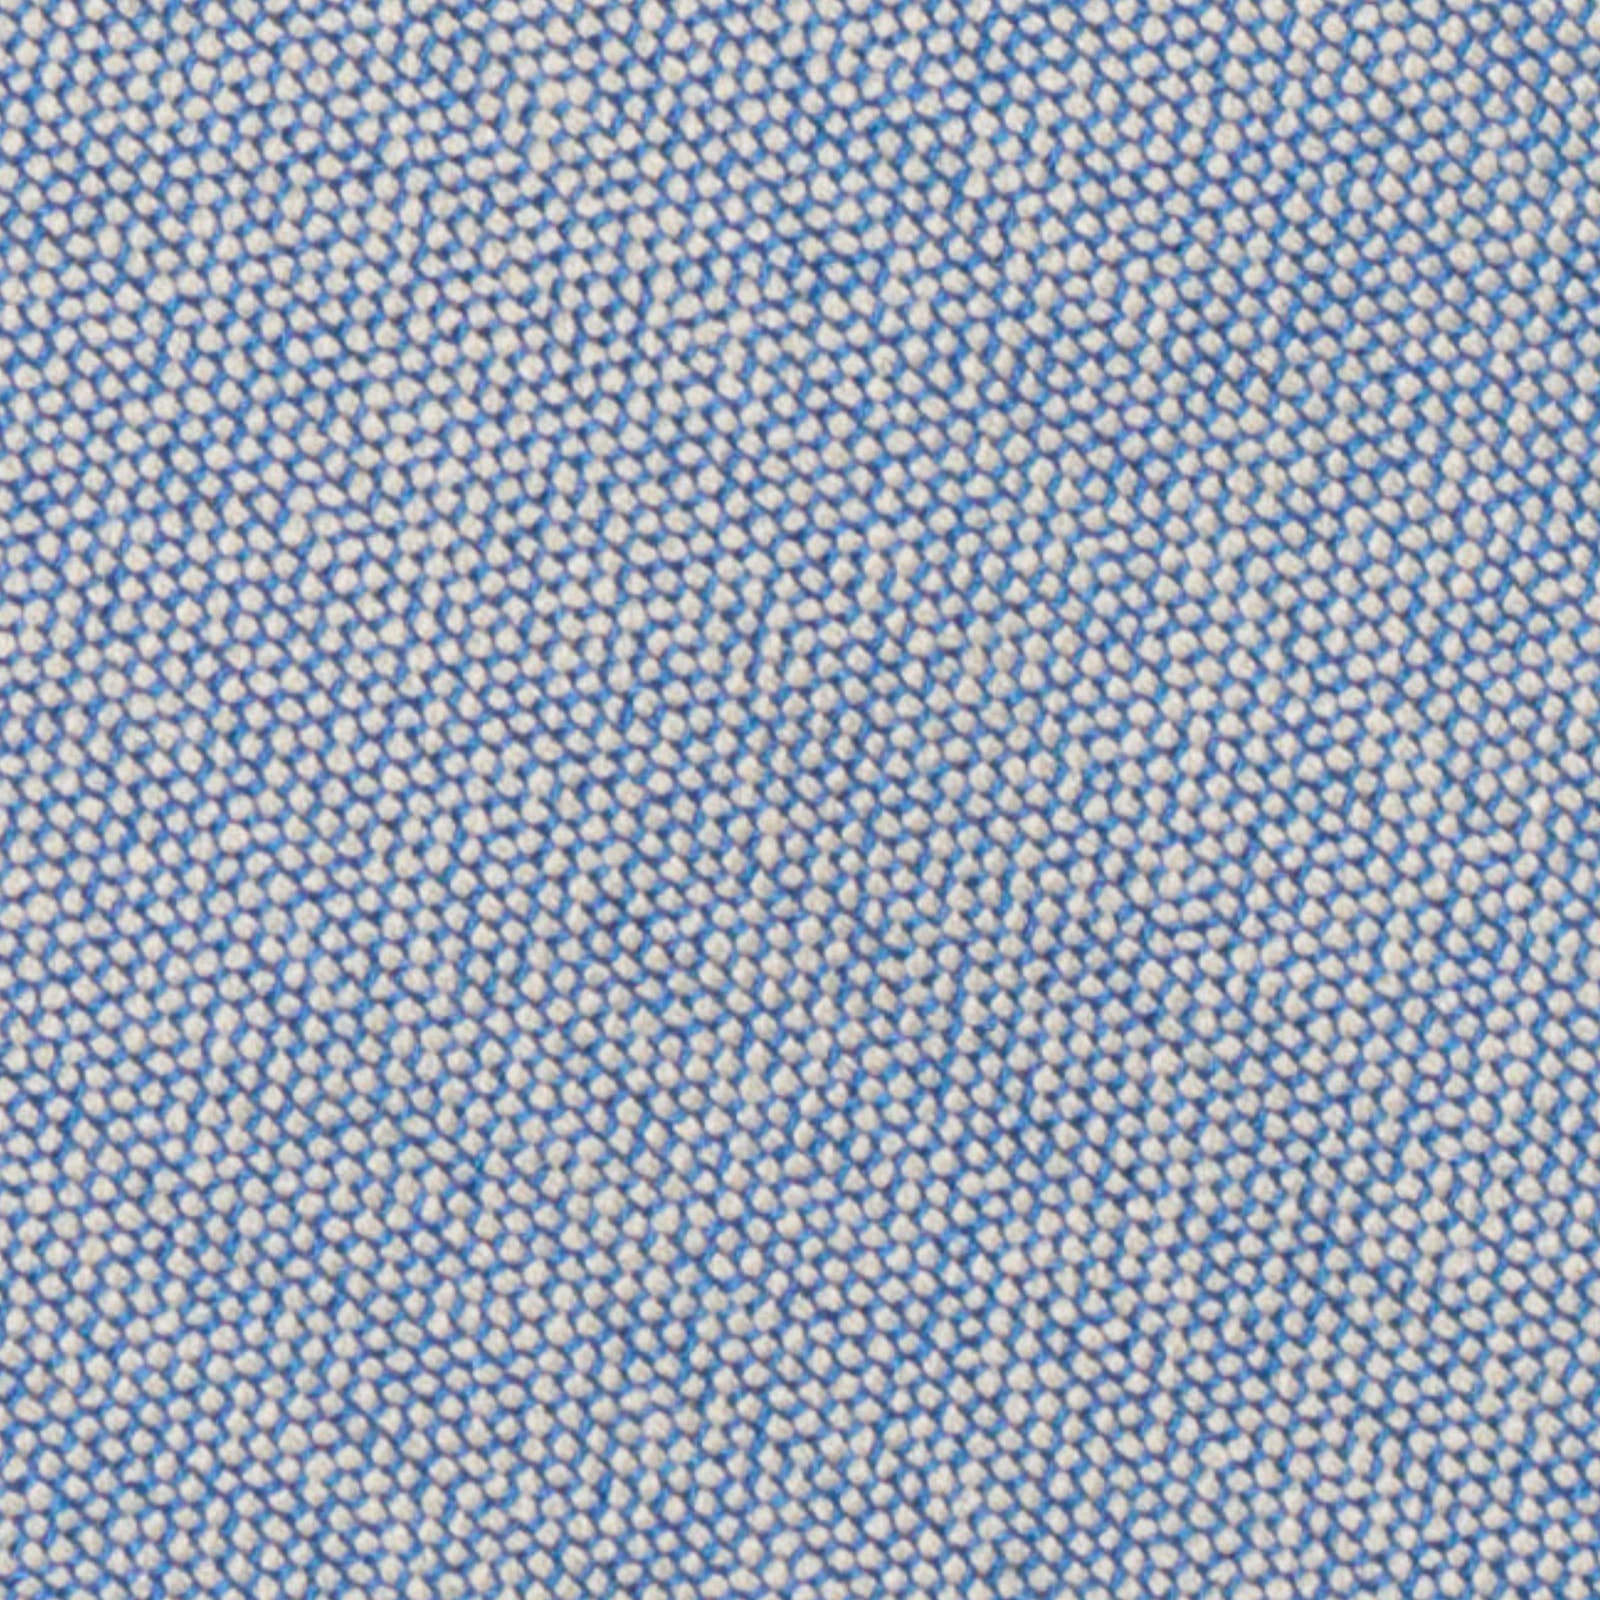 MATTABISCH FOR VANNUCCI Blue Birdseye Silk Tie NEW